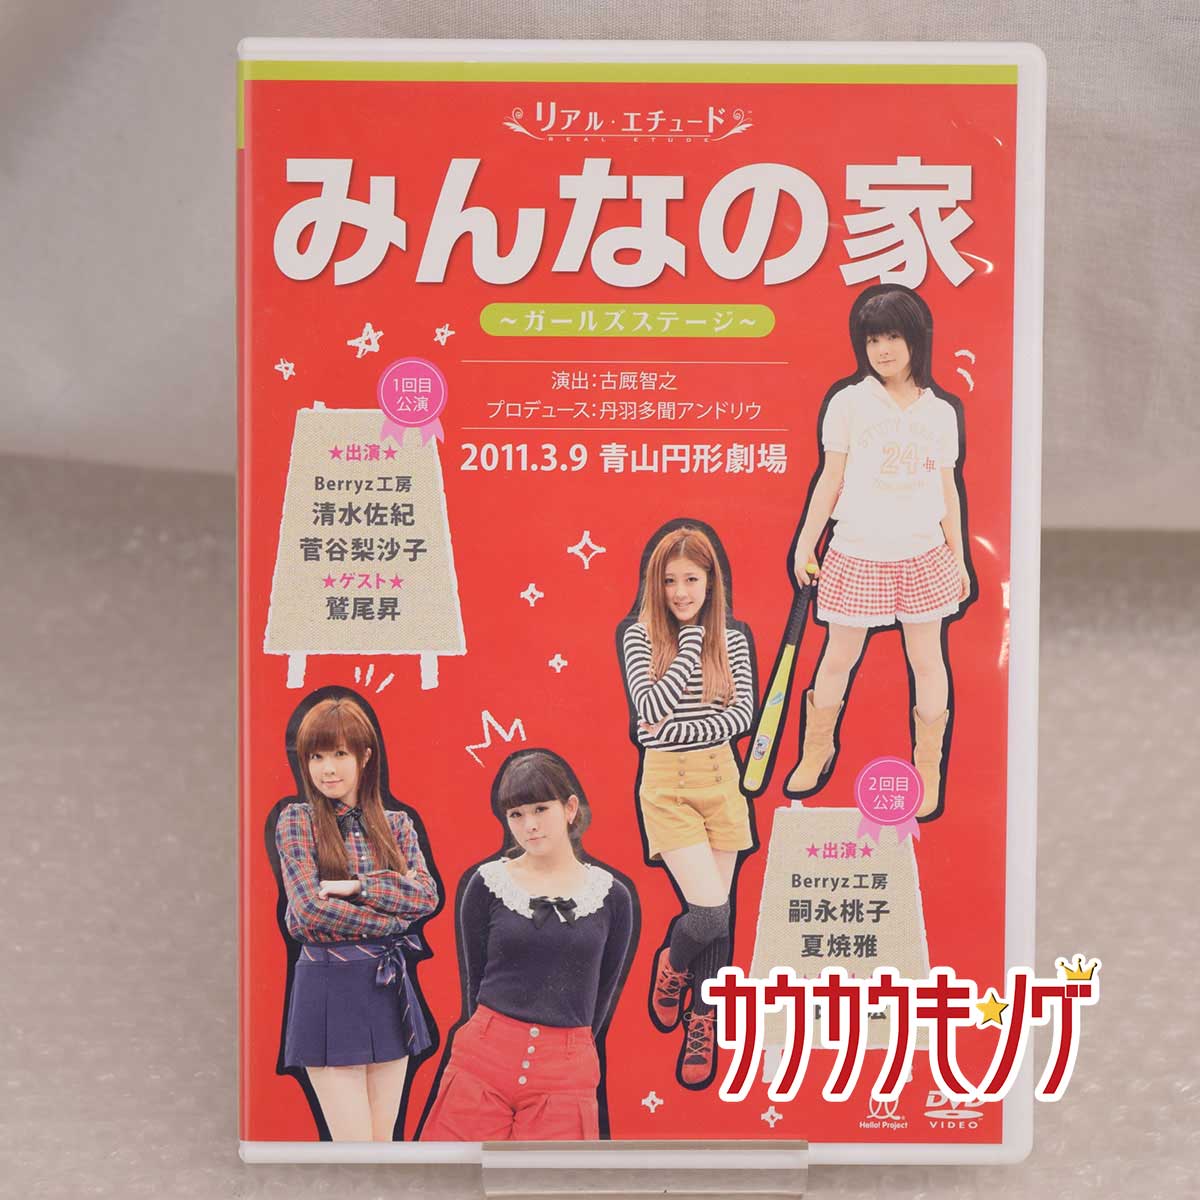 【中古】みんなの家 ガールズステージ DVD Berryz工房 2011.3.9 青山円形劇場